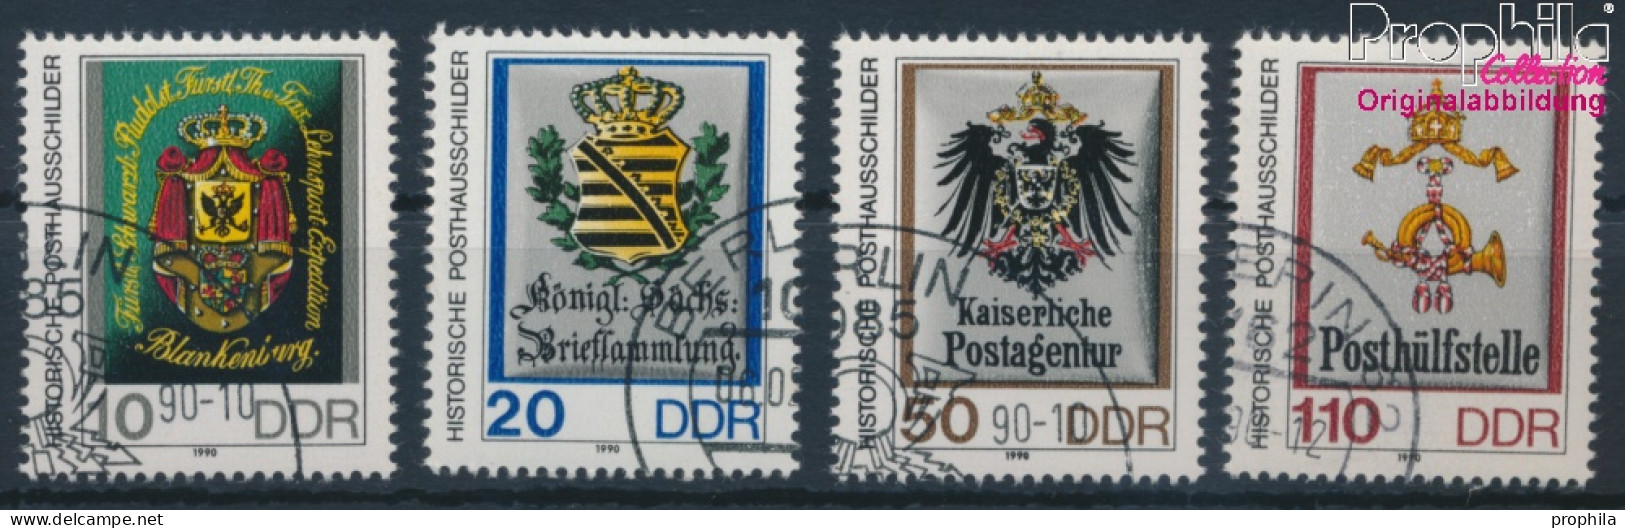 DDR 3302-3305 (kompl.Ausgabe) Gestempelt 1990 Posthausschilder Kleinformat (10405745 - Used Stamps